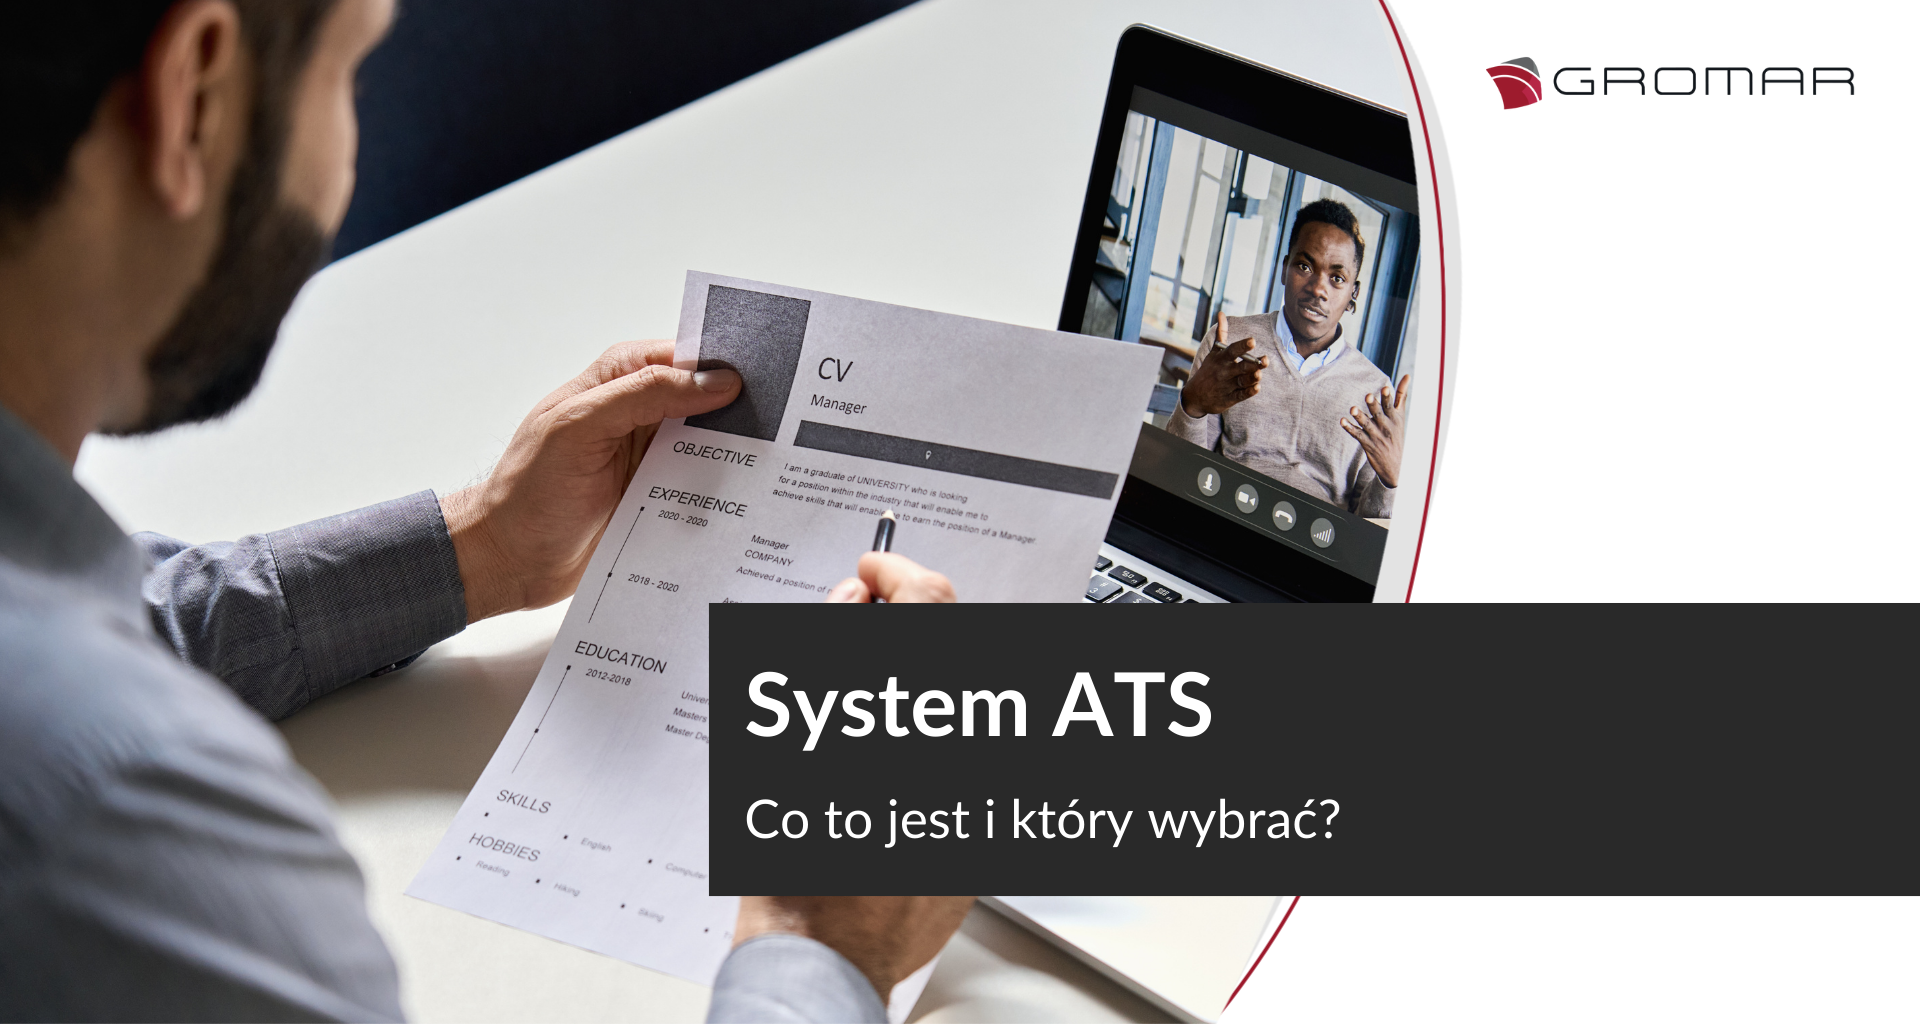 System ATS – co to jest i który wybrać?